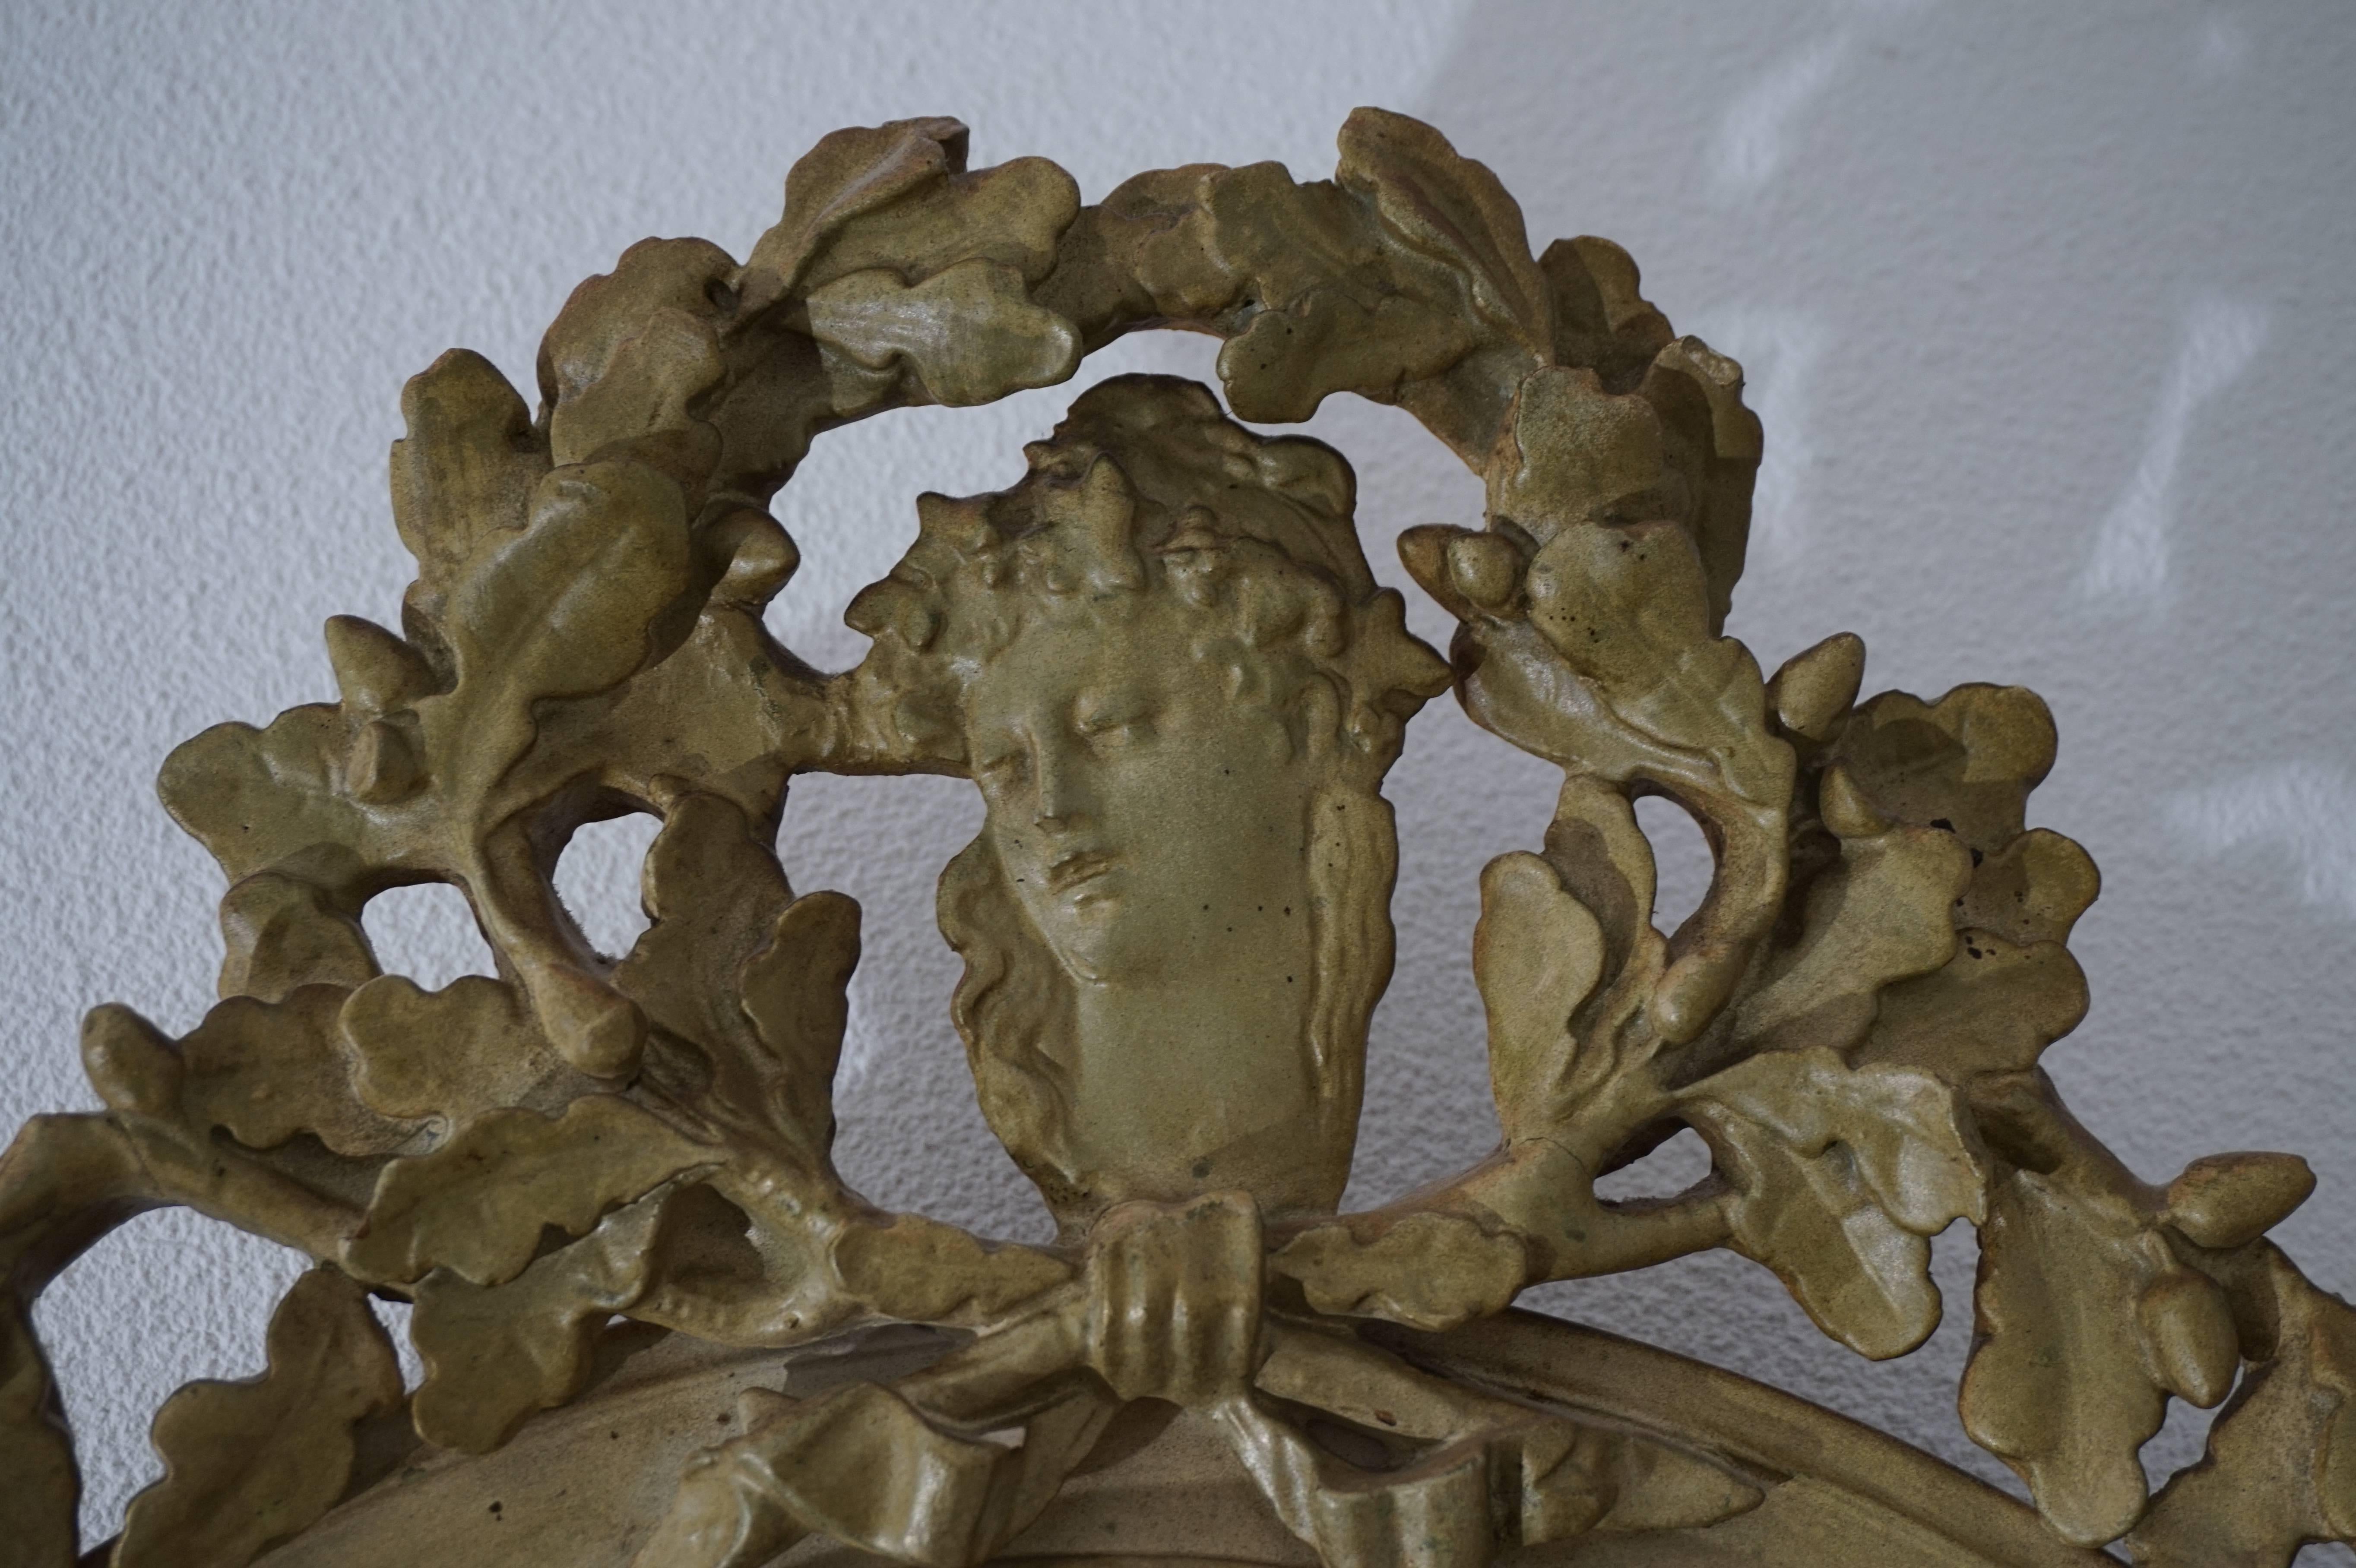 Seltene und praktische Größe, antiker Spiegel.

Dieser spätviktorianische, abgeschrägte Spiegel ist in sehr gutem und originalem Zustand. Die Eichenblätter auf der Spitze haben die Form einer Königskrone. In der Mitte dieser stilisierten Krone